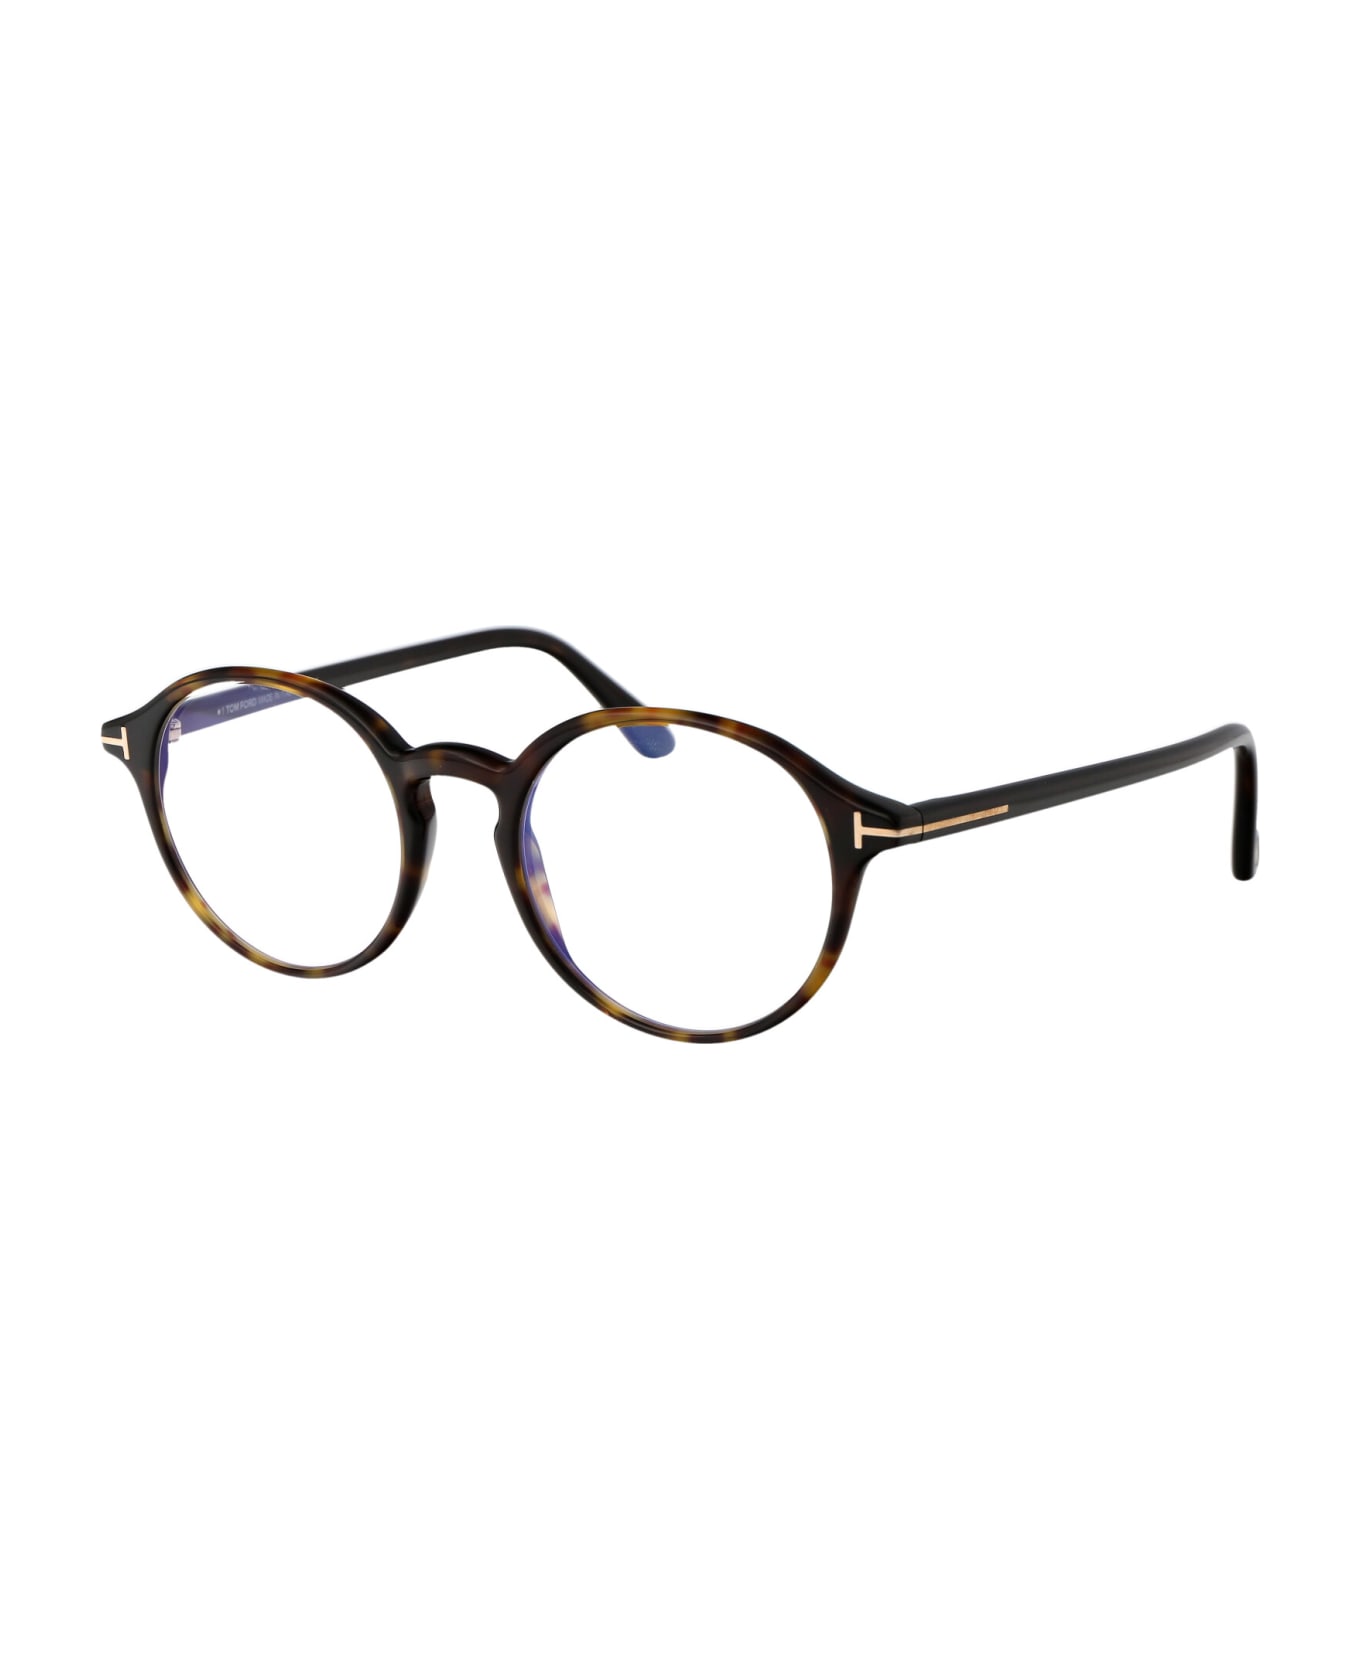 Tom Ford Eyewear Ft5867-b Glasses - 052 Avana Scura